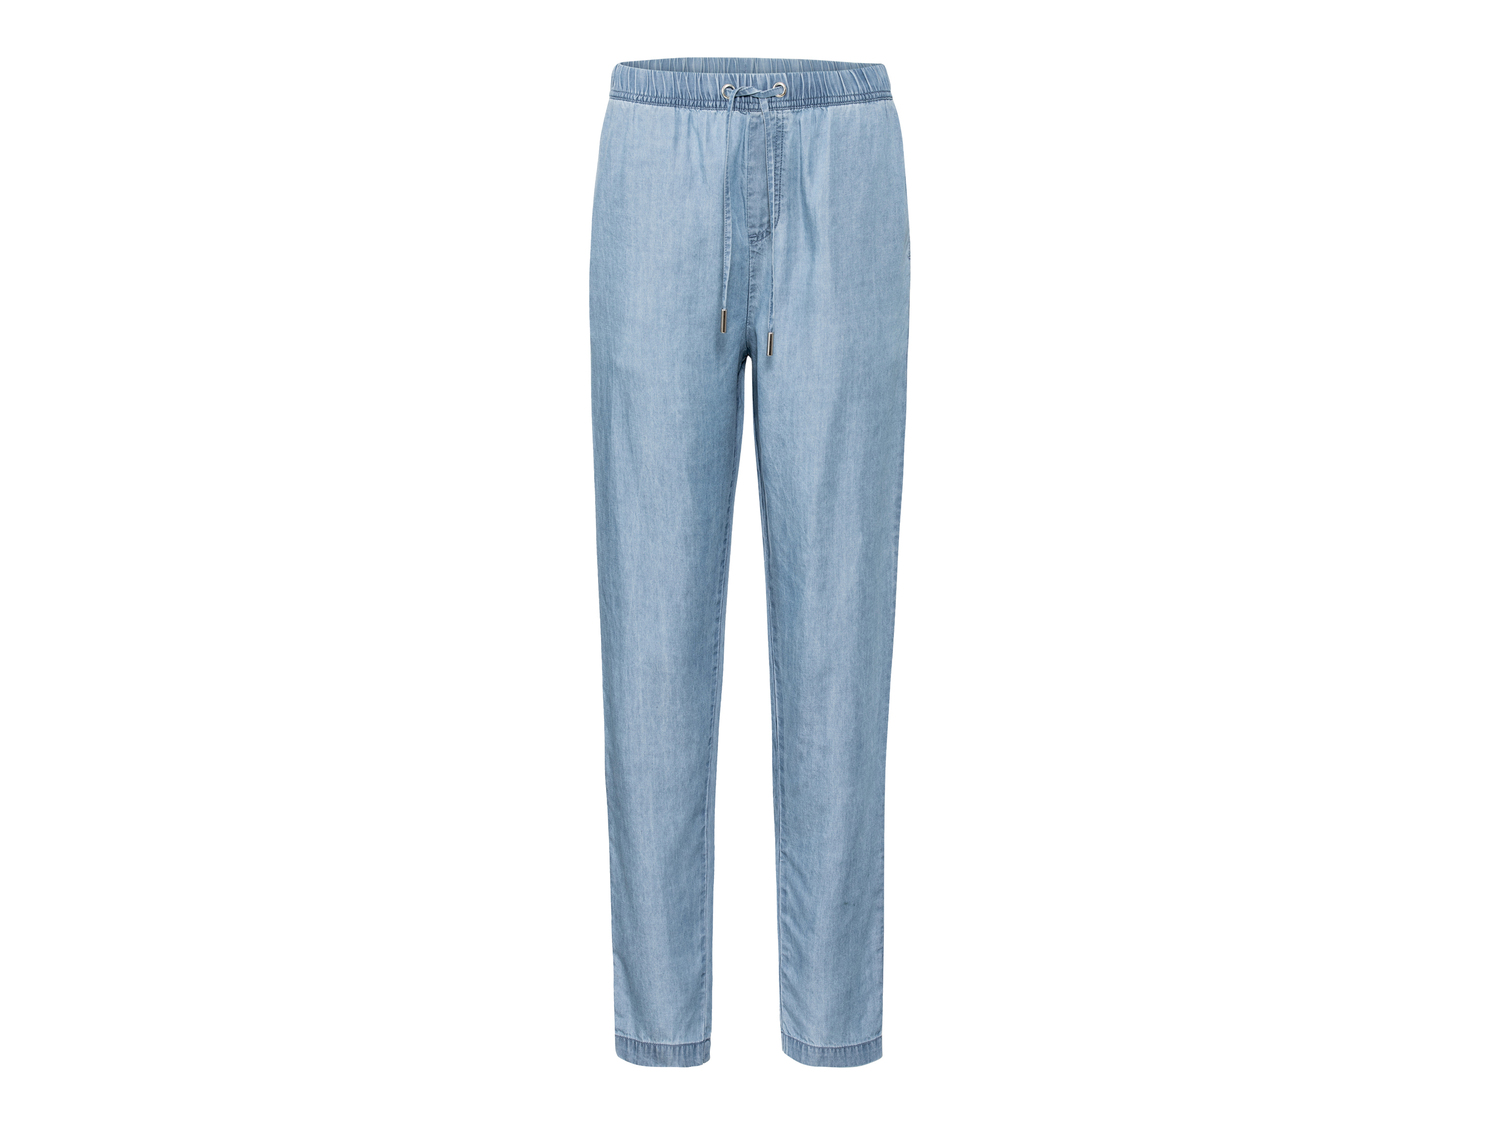 Pantaloni da donna Esmara, prezzo 9.99 &#8364; 
Misure: 38-48
Taglie disponibili

Caratteristiche

- ...